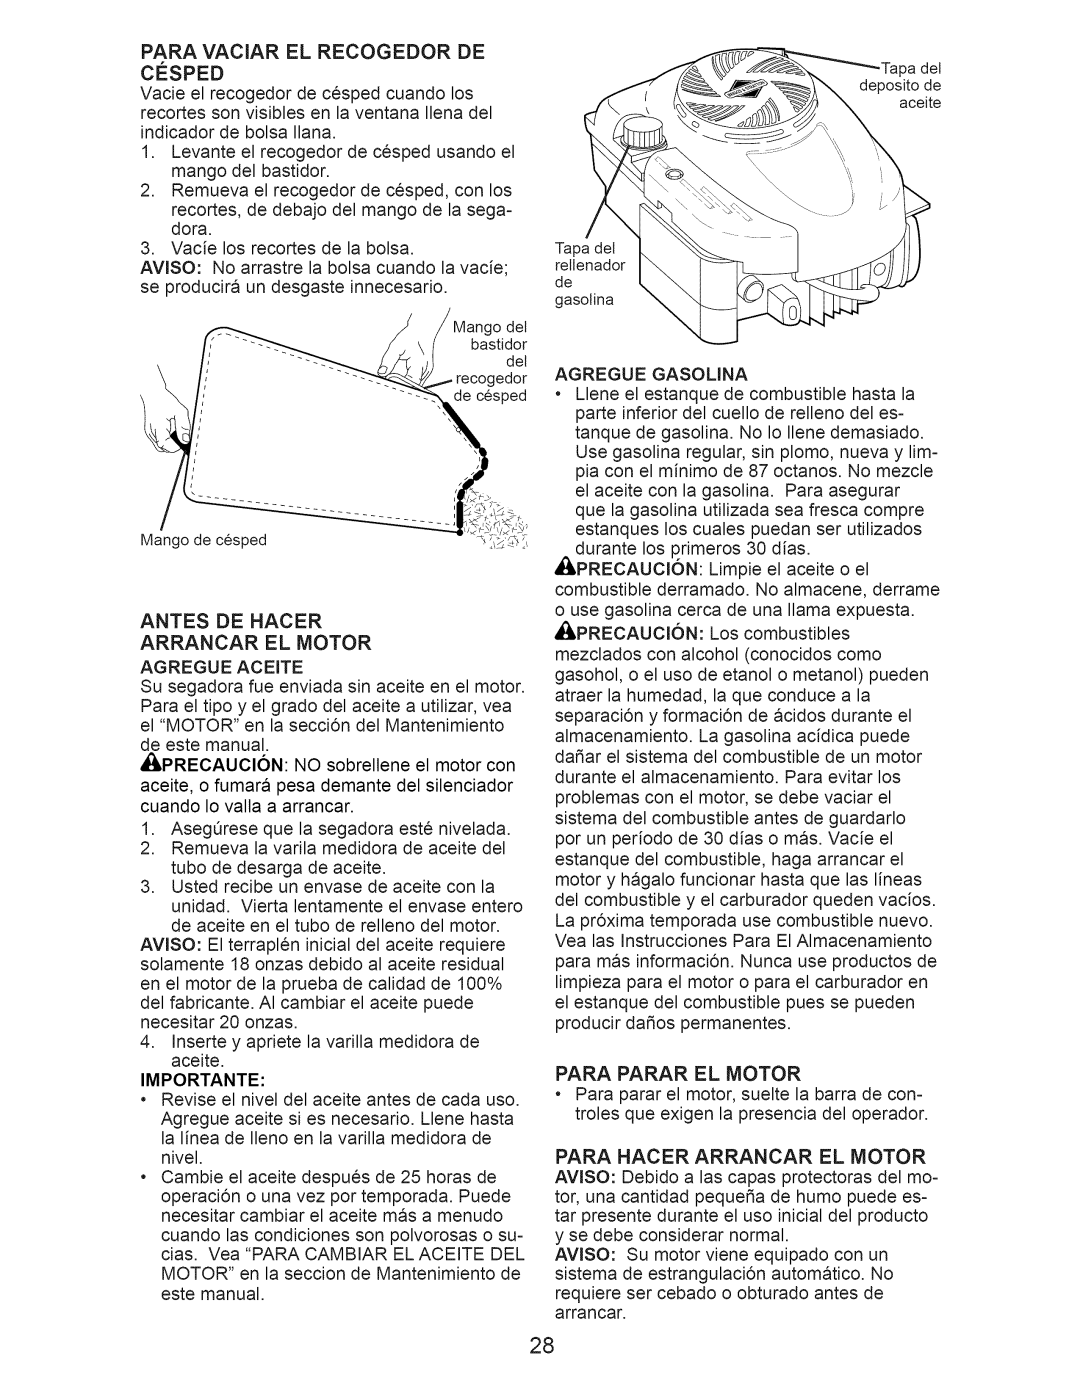 Craftsman 917.374358 owner manual Antes De Hacer Arrancar El Motor, Importante, Para Parar El Motor 